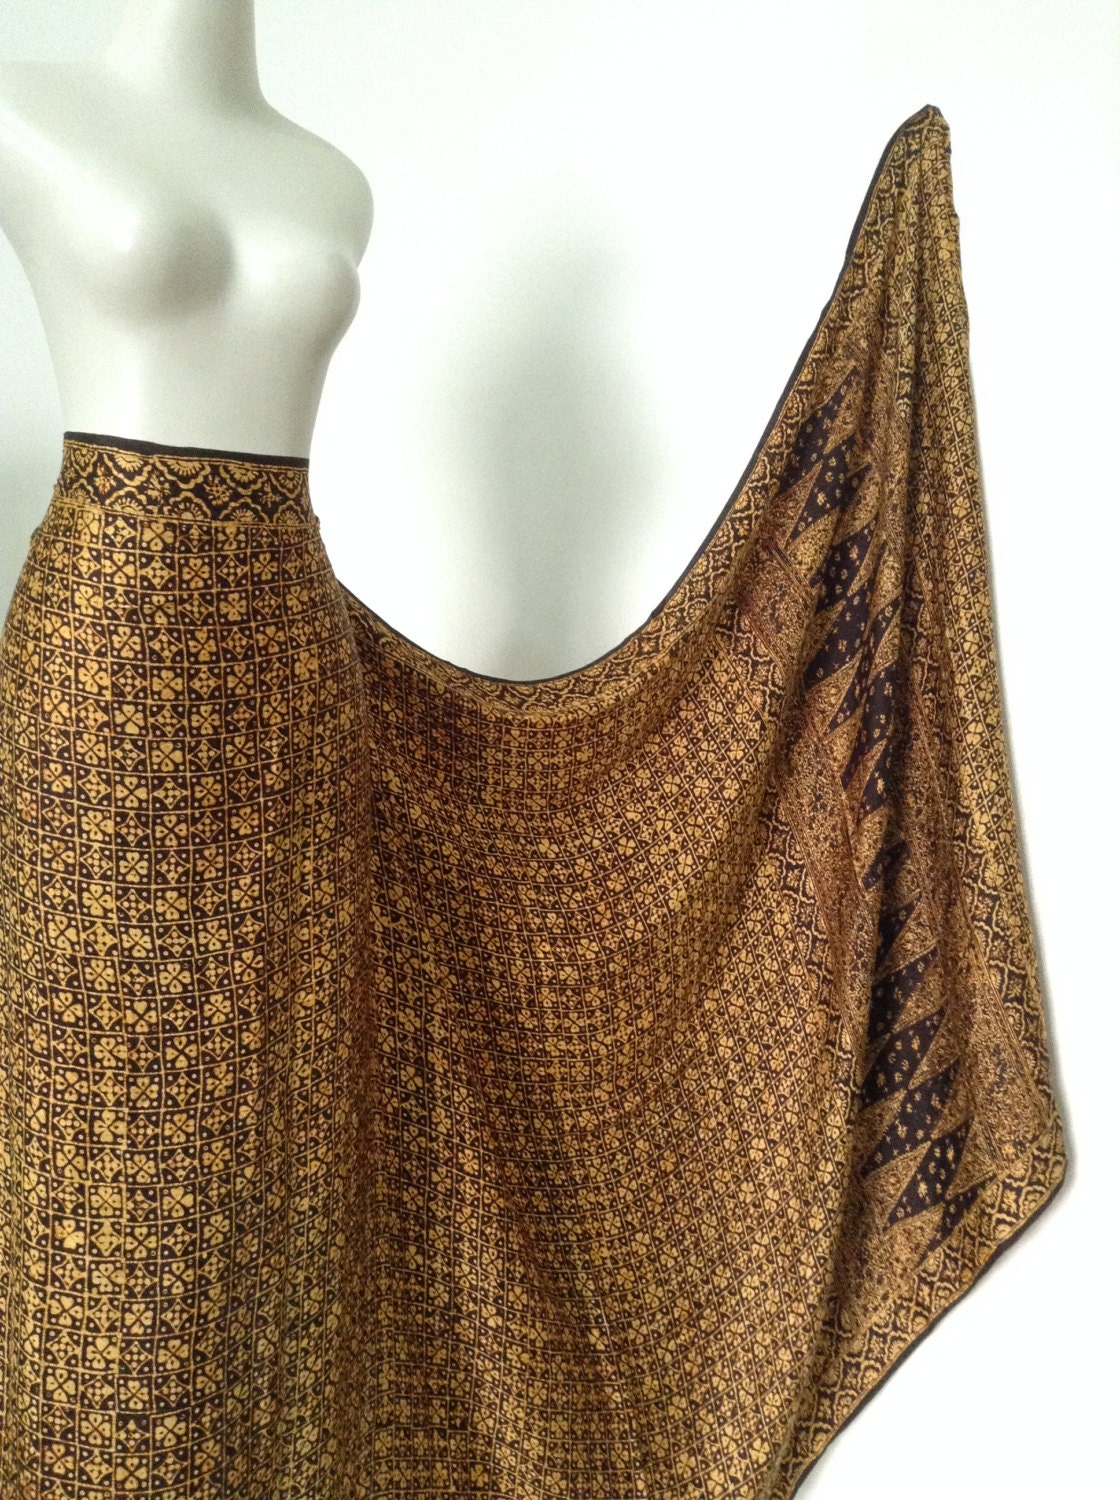 Silk Batik Dressmaking Fabric Simple And By Javanicehandycraft 